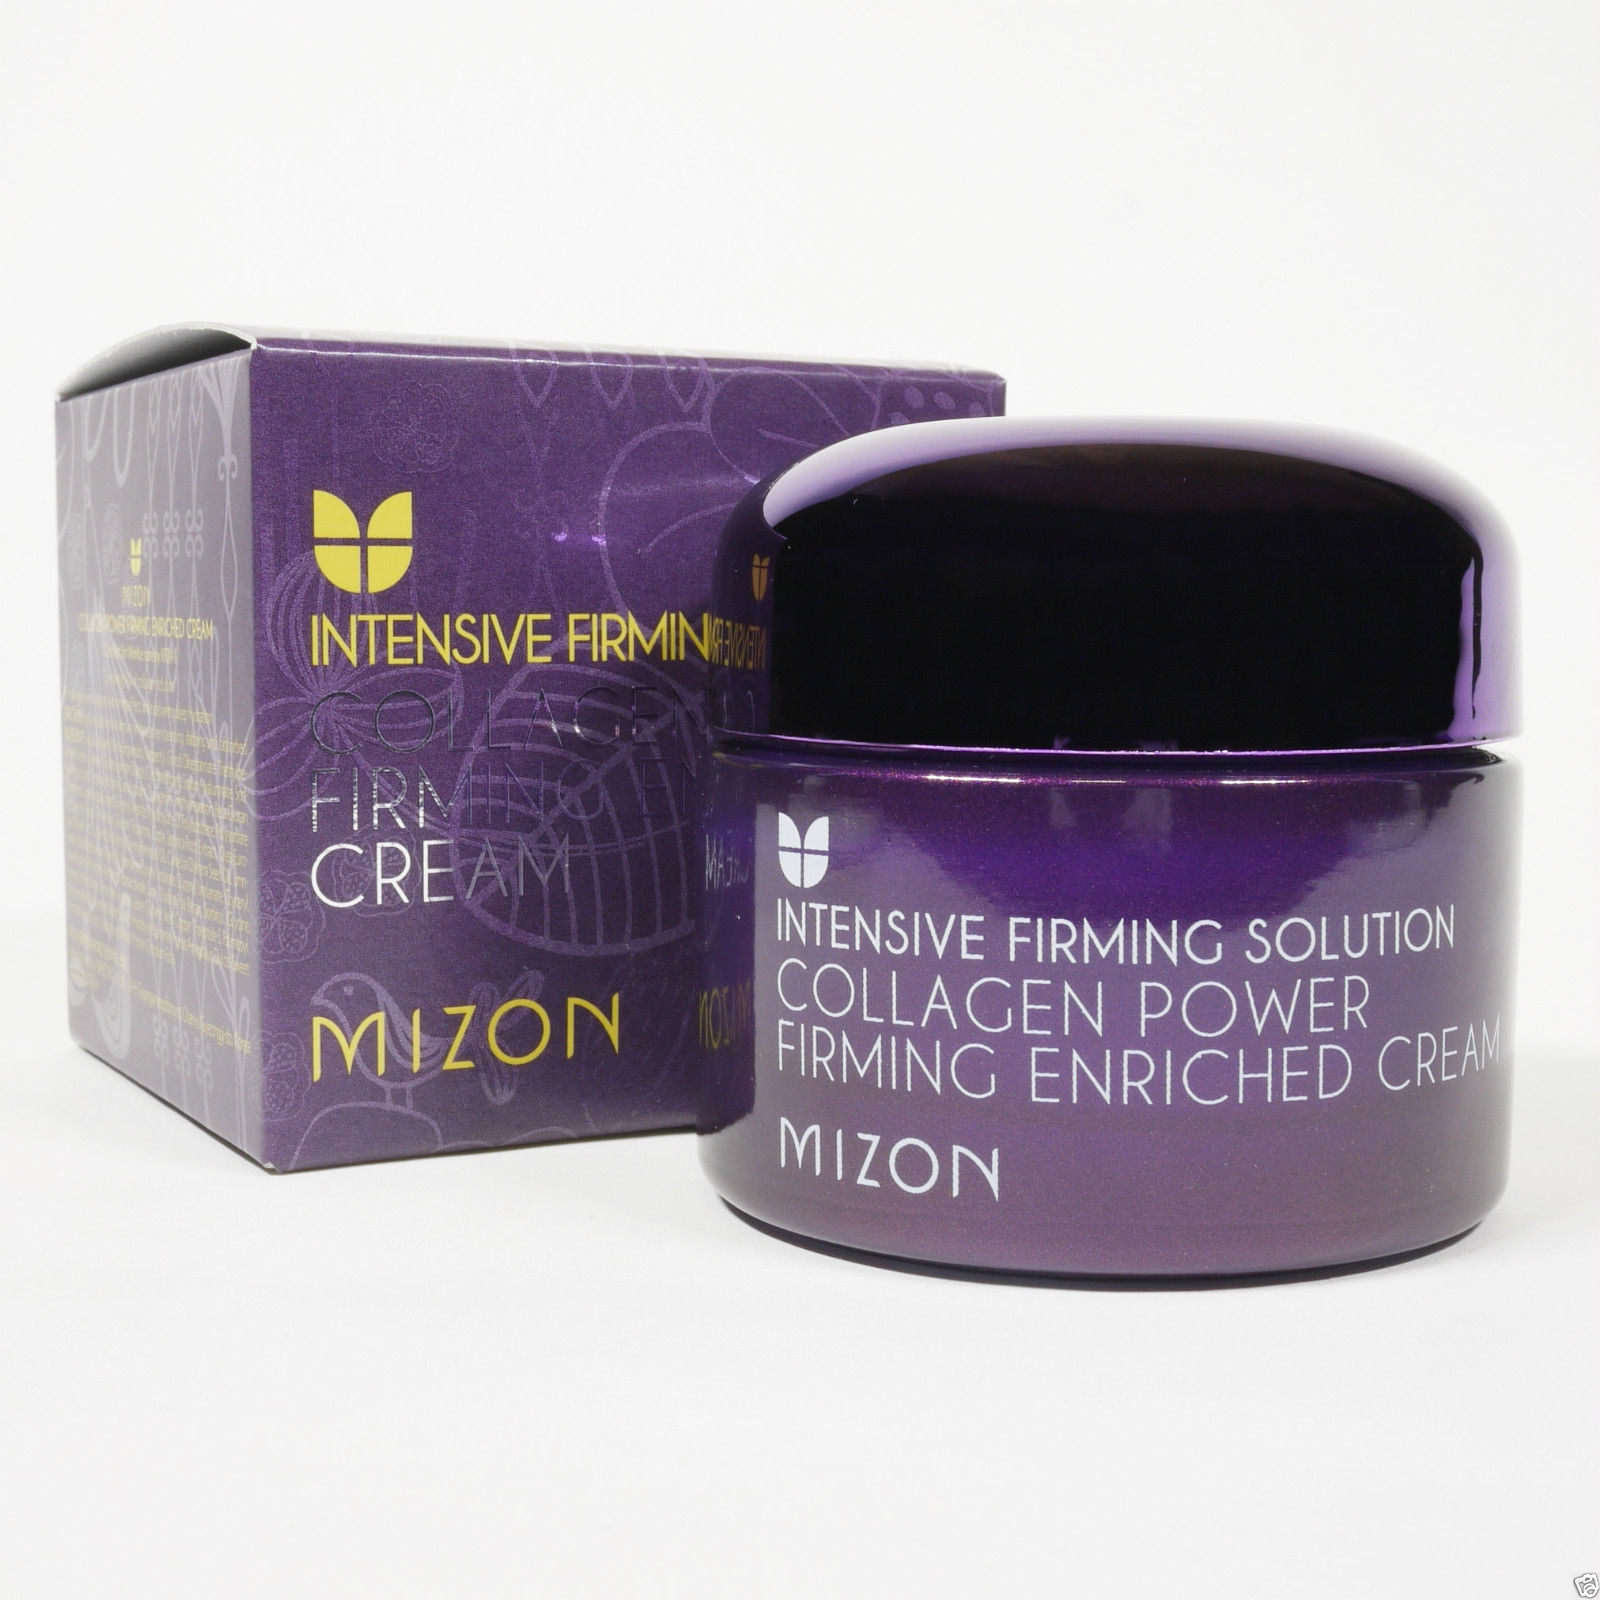 Укрепляющий крем с коллагеном для зрелой кожи Mizon Collagen Power Firming Enriched Cream 87521142 - фото 5